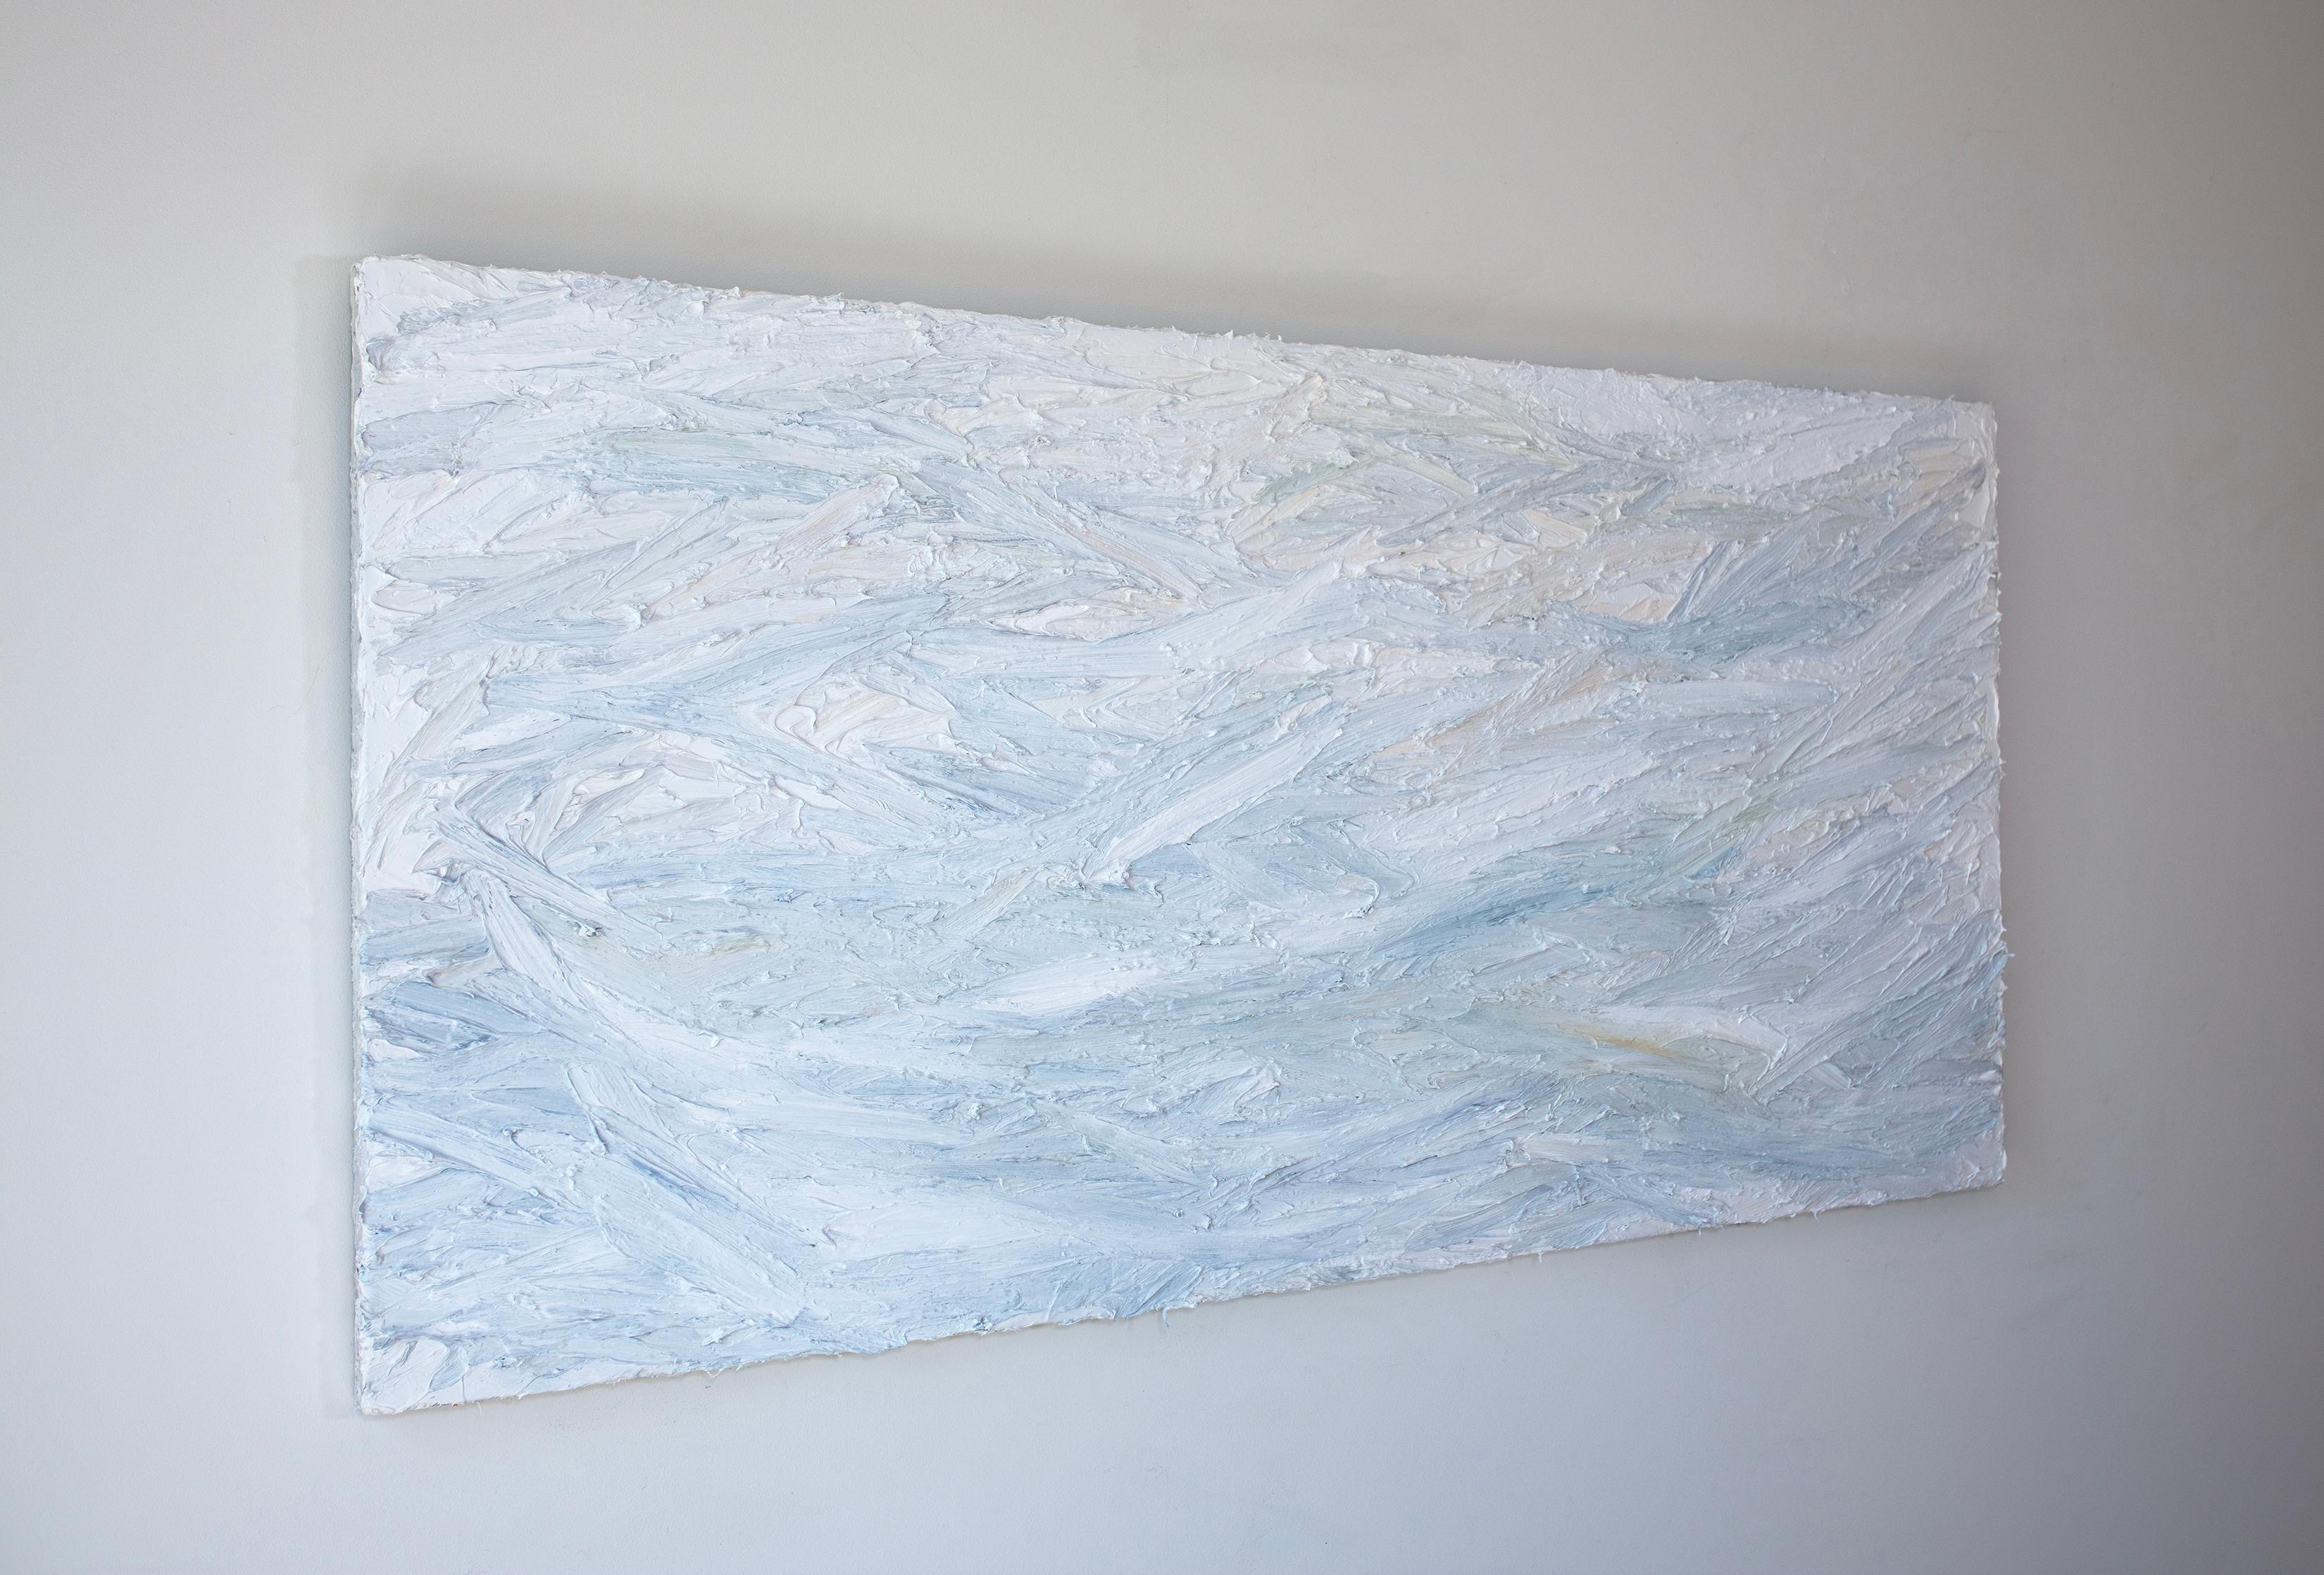 Ce grand tableau abstrait de Teodora Guererra présente une palette légère et froide composée principalement de bleu et de blanc, avec de très subtils accents de jaune clair. L'artiste applique d'épaisses couches de peinture par des gestes rapides,